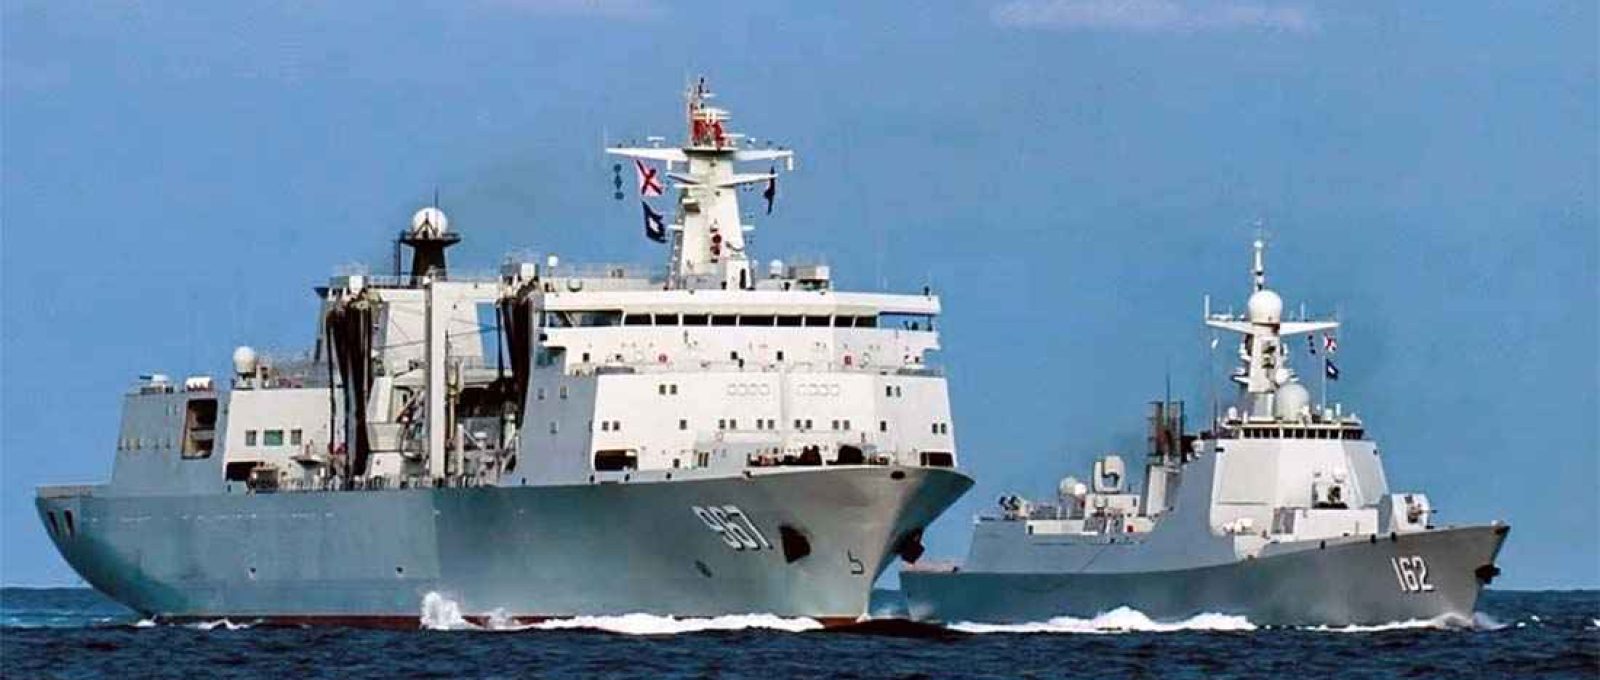 O navio de abastecimento Chaganhu e o destroier Nanning, ambos da Marinha chinesa, conduzem exercícios navais no Mar do Sul da China (Weibo).